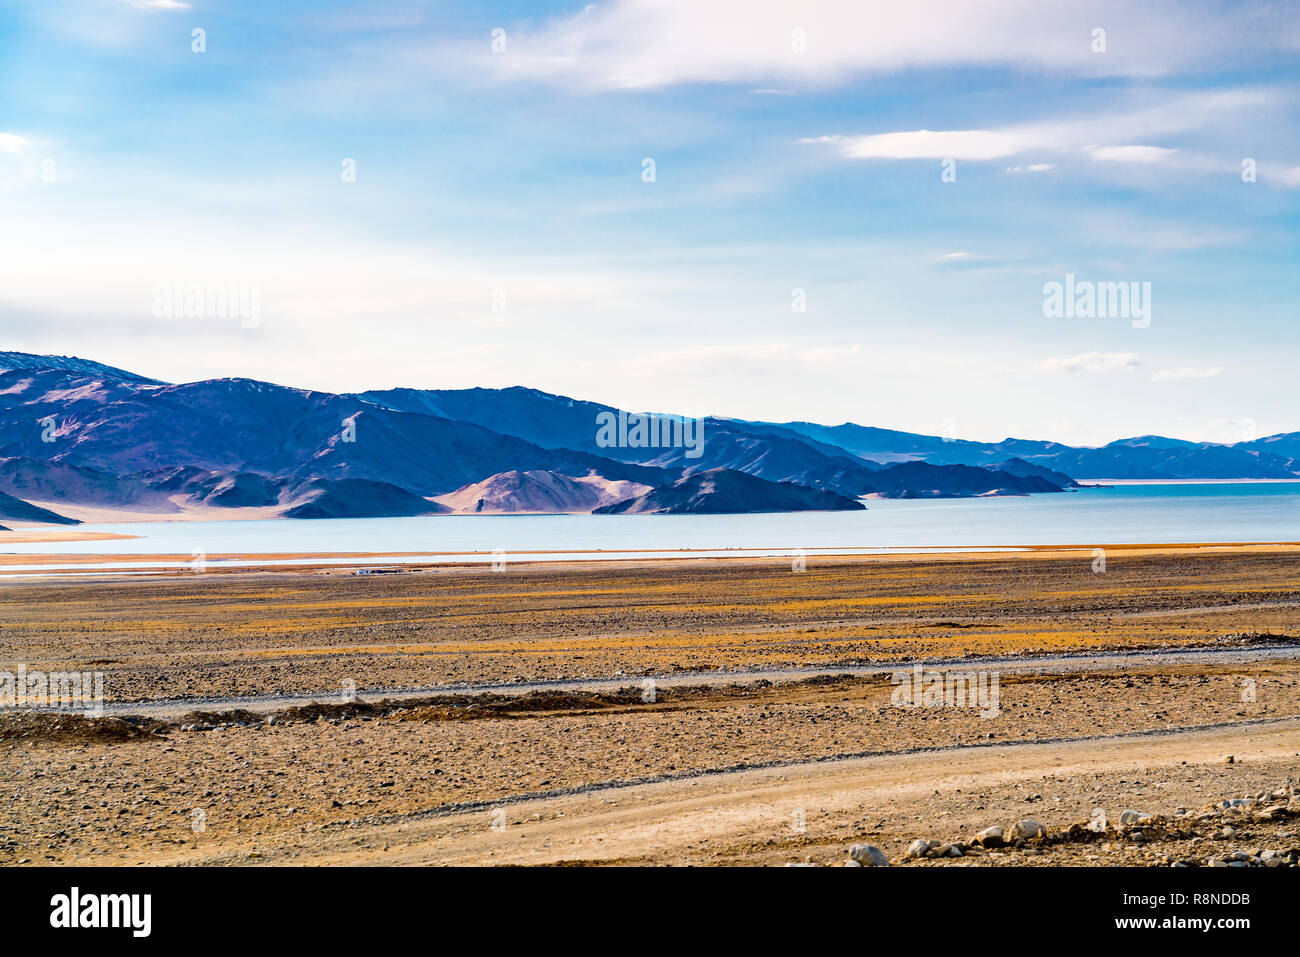 Ansicht der Großen Steppe mit dem Animal Farm in der Nähe der See vor dem hohen Berg an Ulgii in der westlichen Mongolei Stockfoto